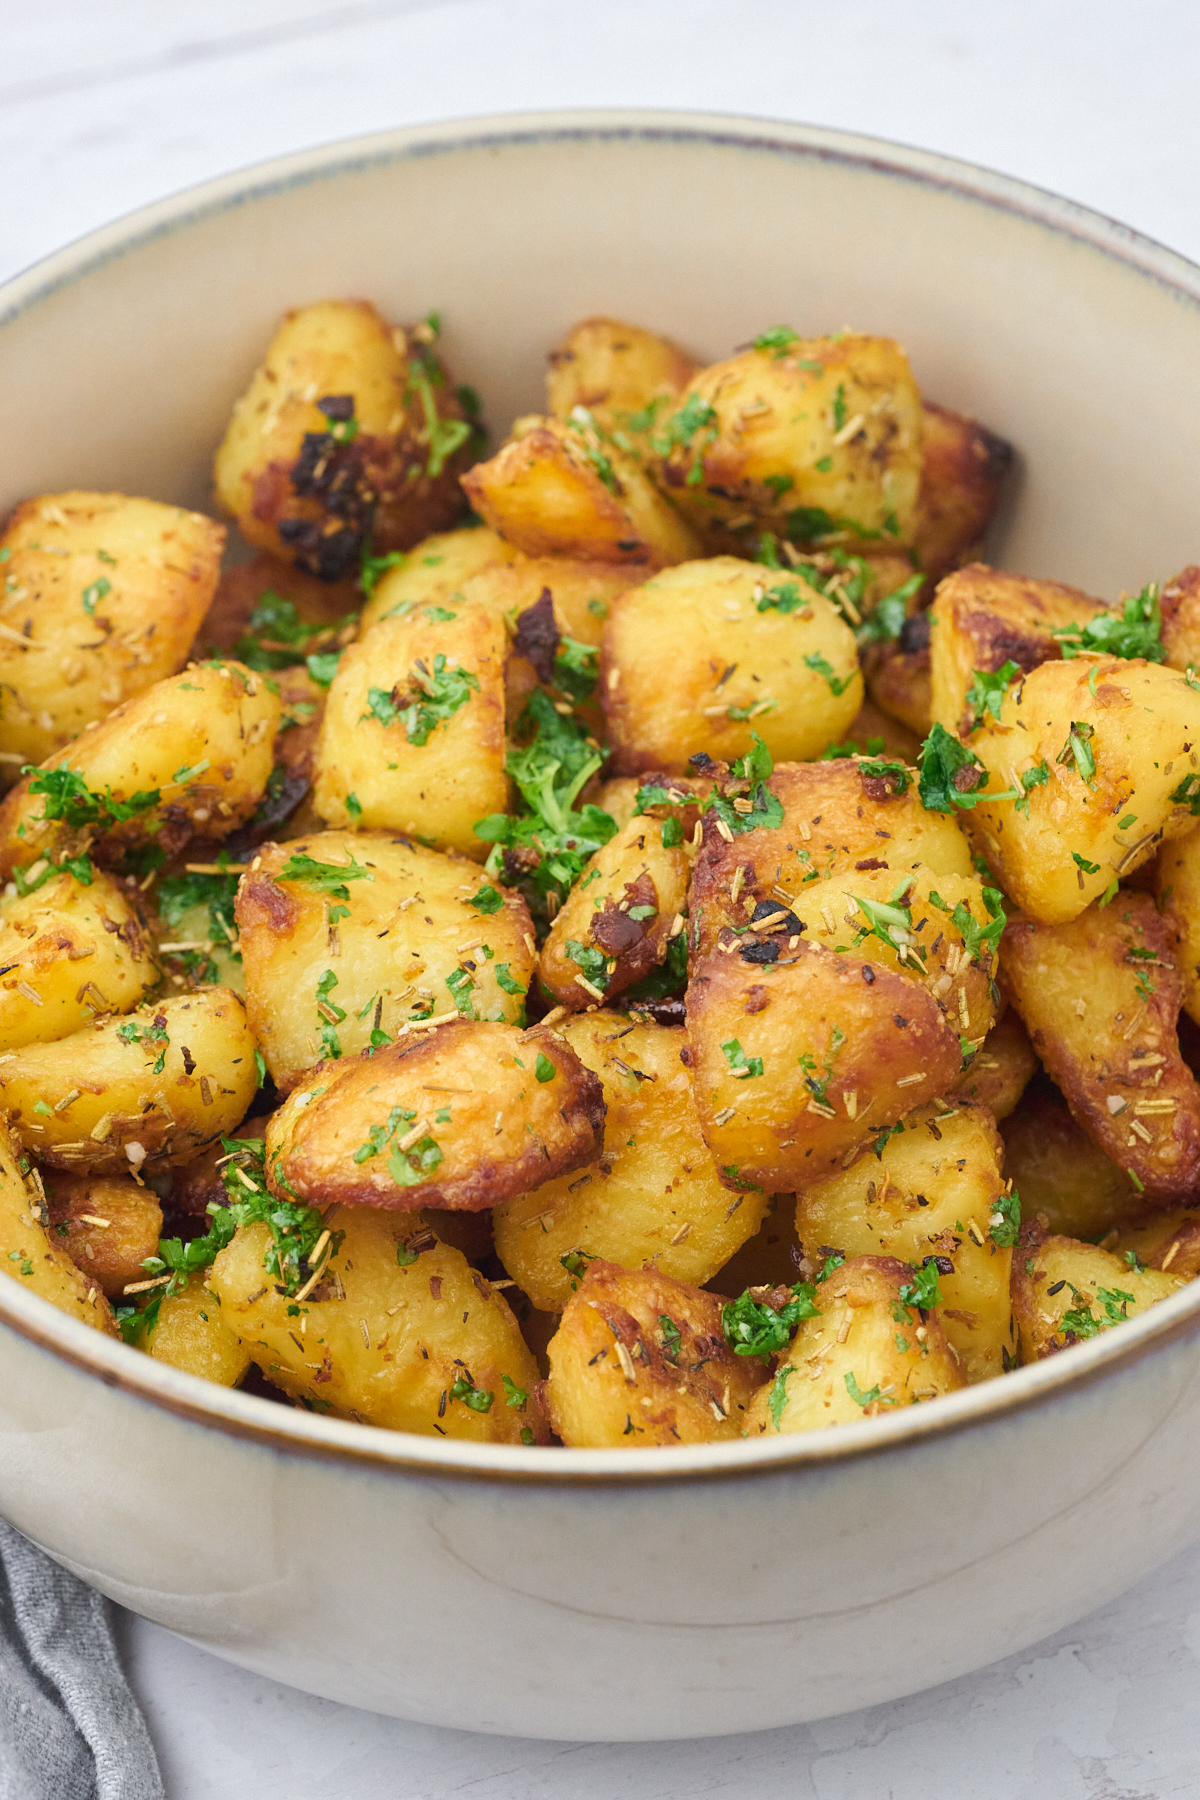 sprøde kartofler klar til servering i skål.